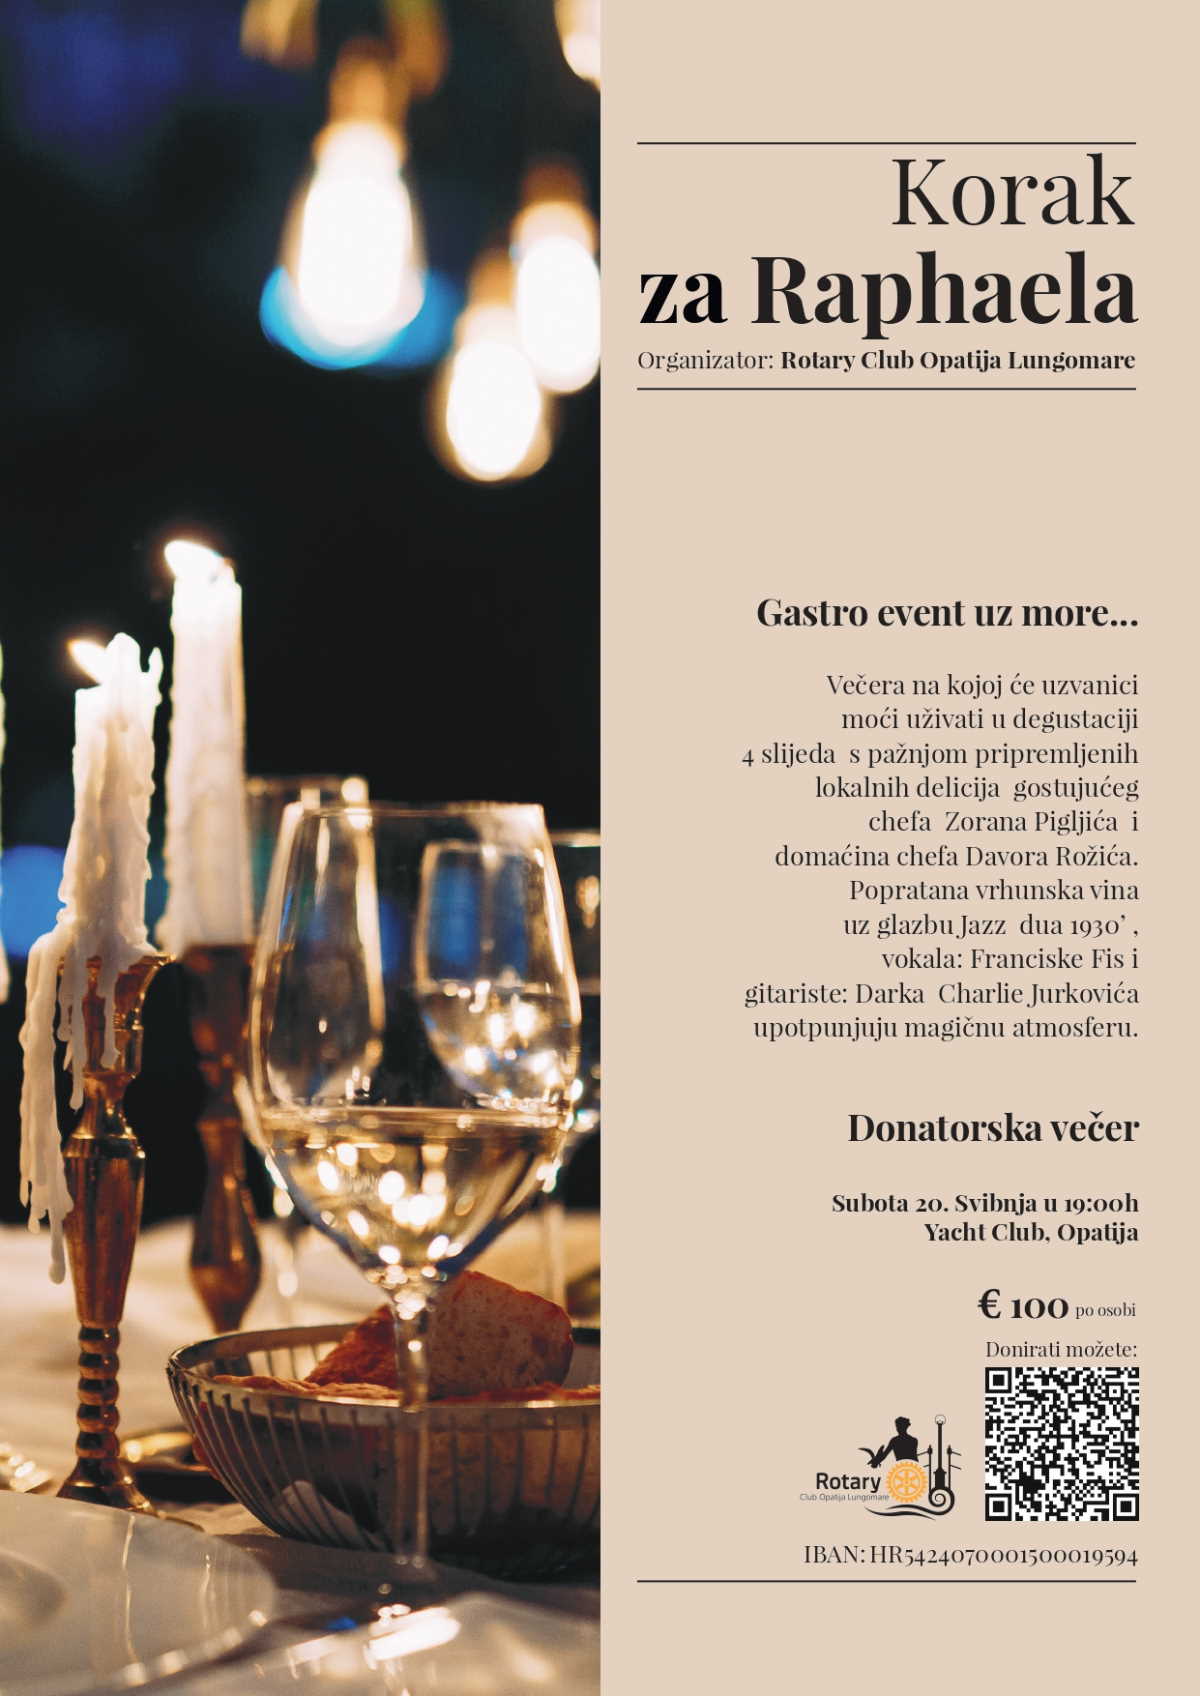 Rotary klub Opatija Lungomare organizira donatorsku večeru "Korak za Raphaela"